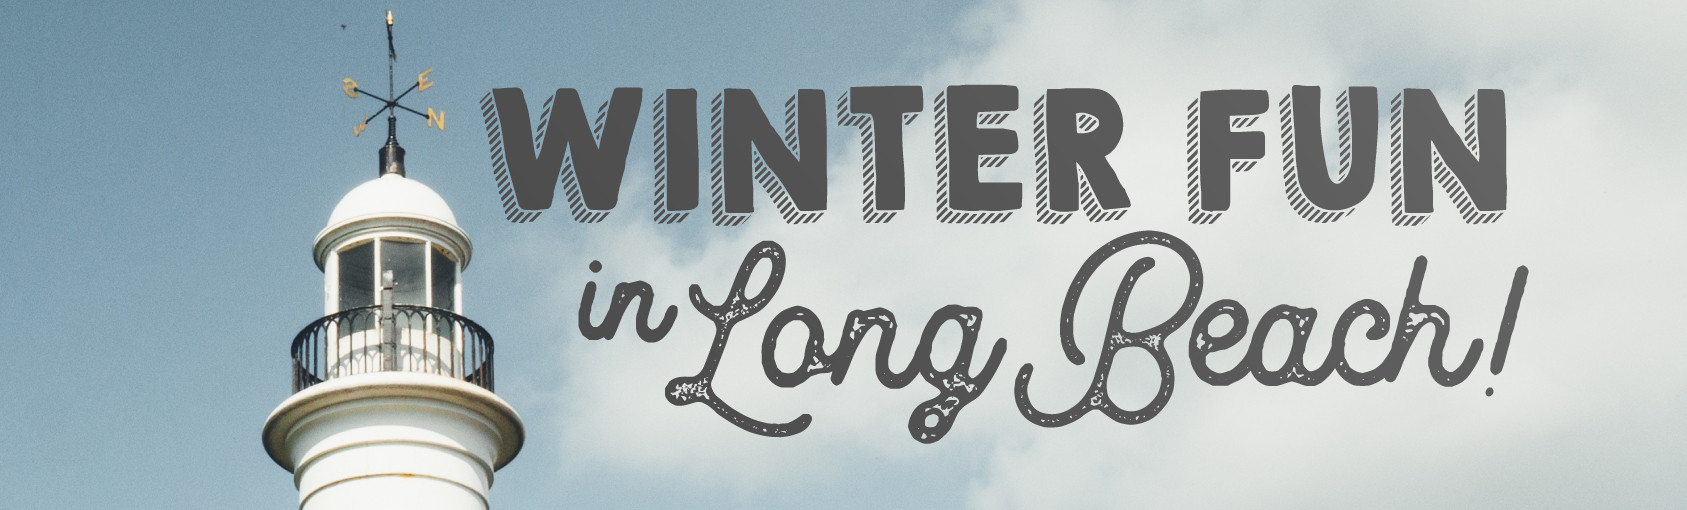 Enjoy Winter in Long Beach banner